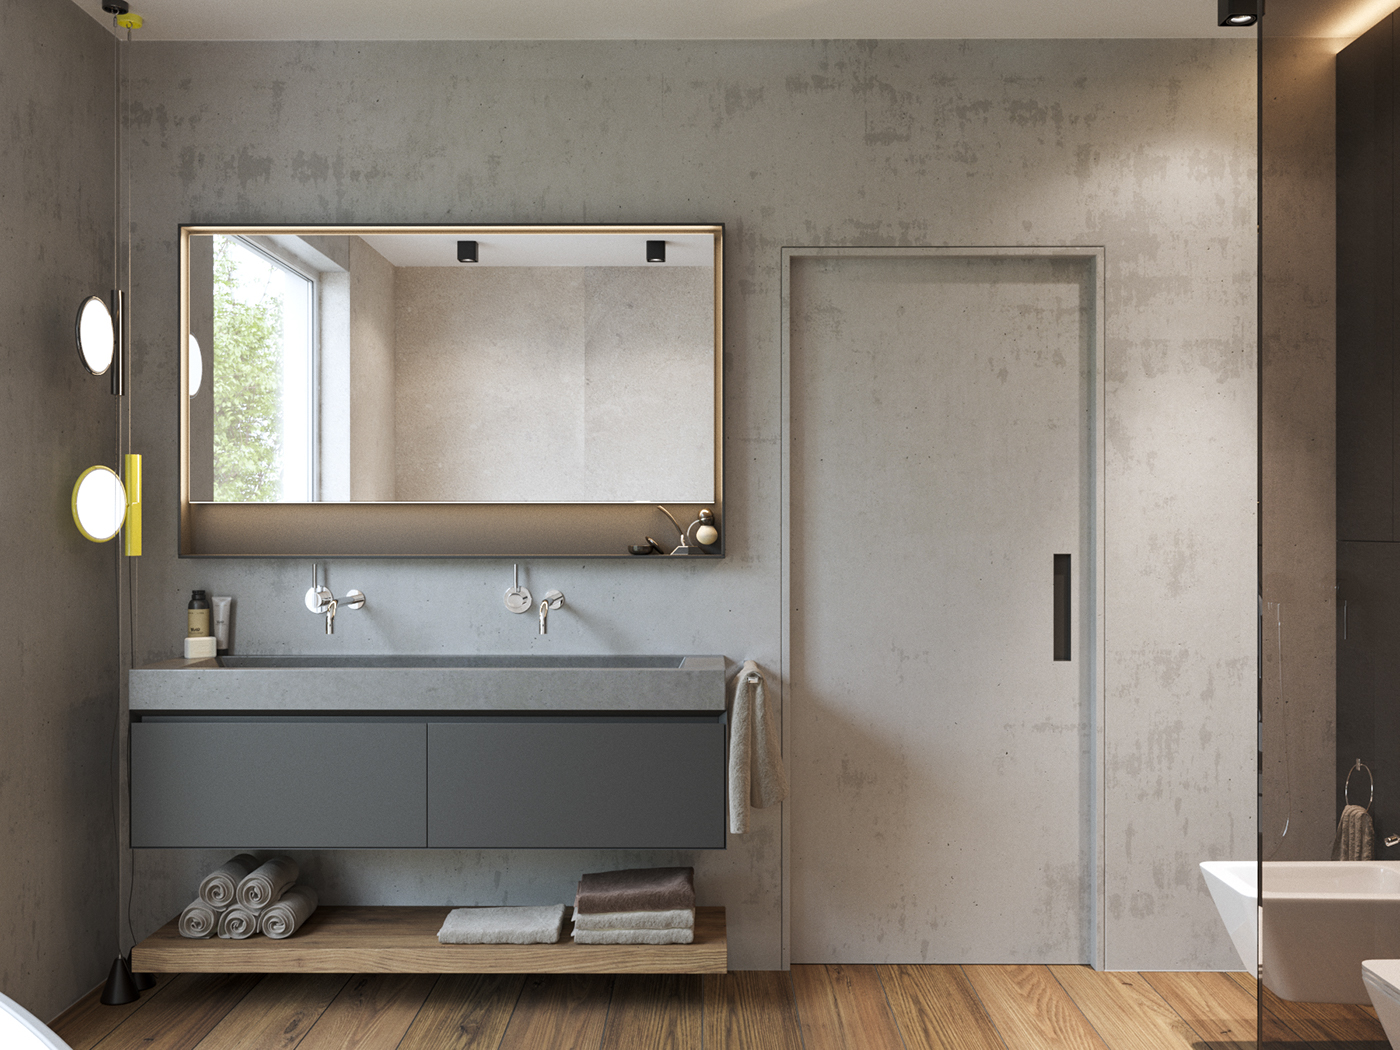 visualization archviz Interior architecture Render 3D CGI rendering kitchen bathroom